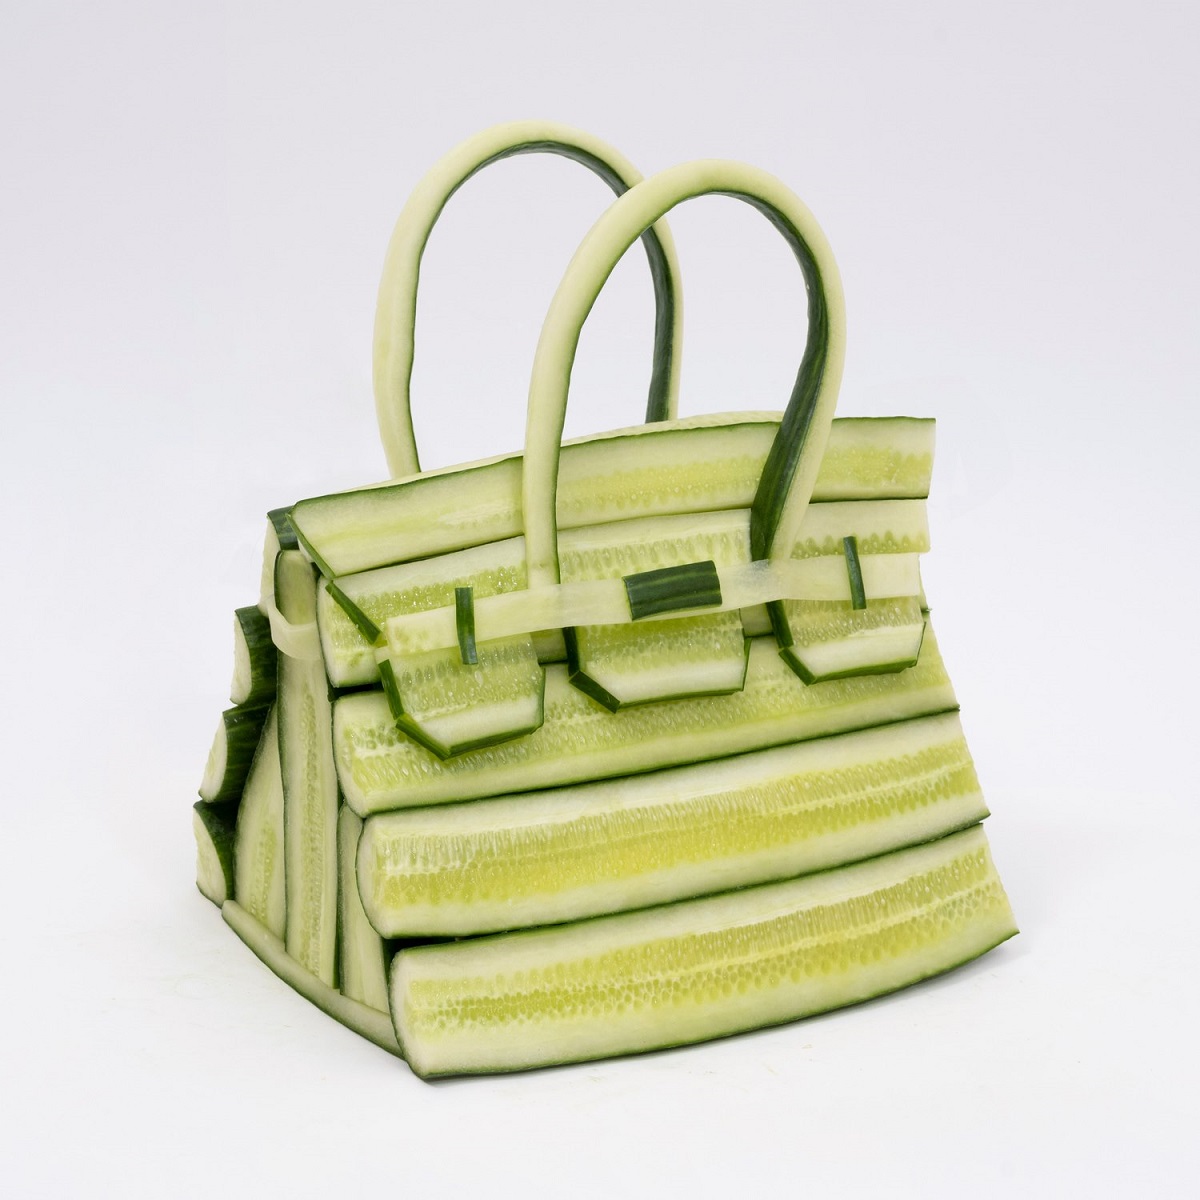 Vegetable handbag by Ben Denzer